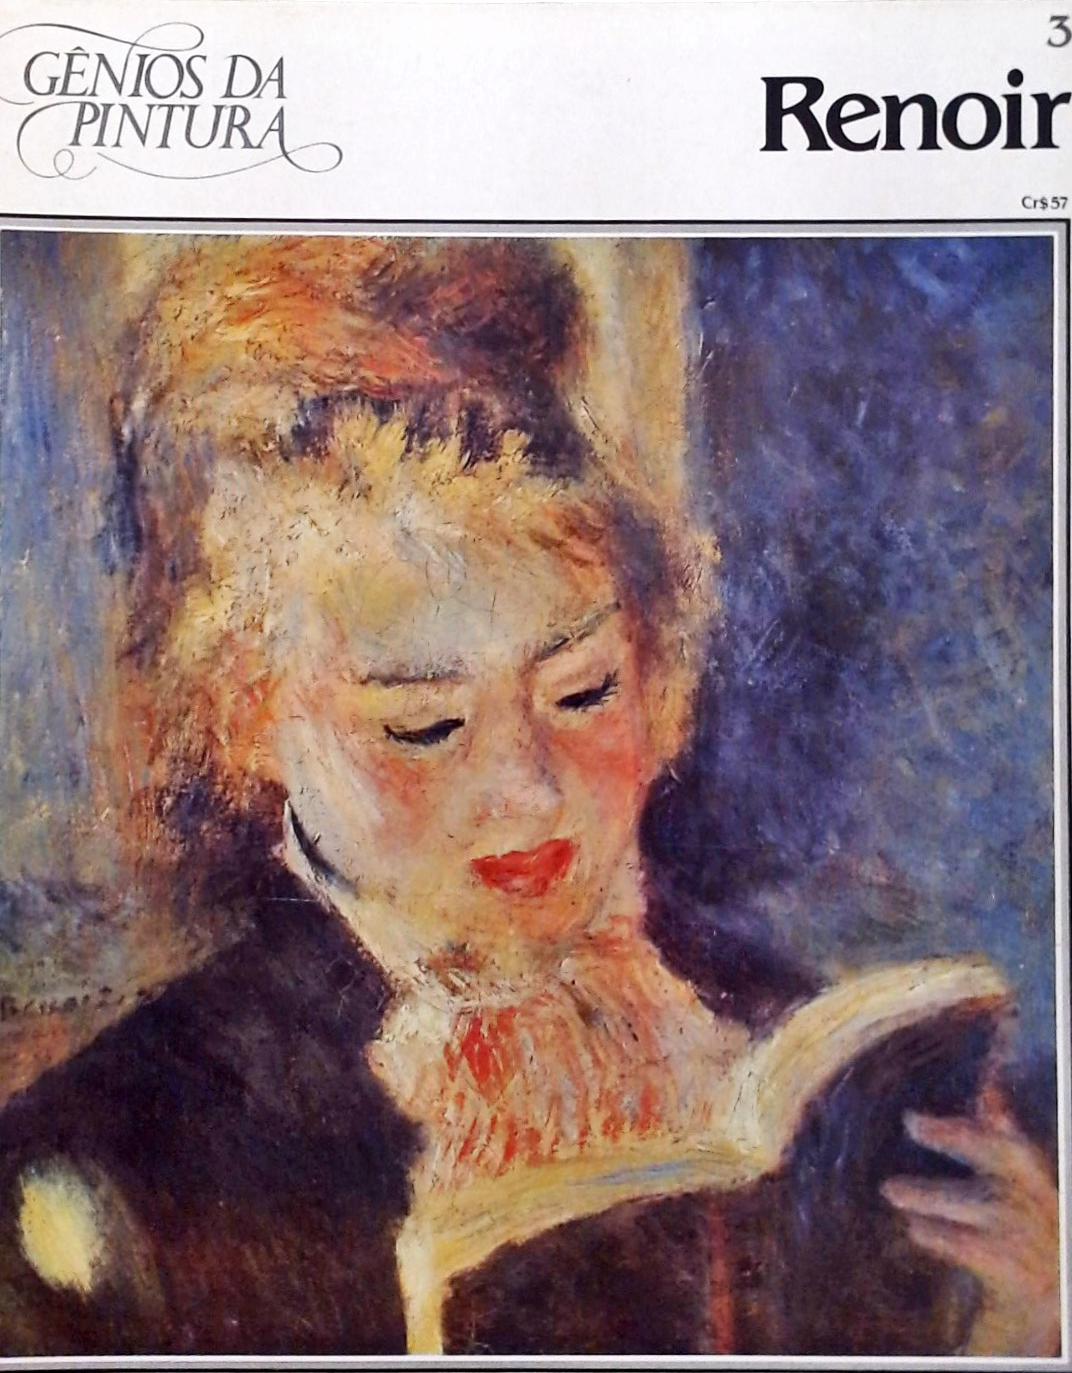 Gênios da Pintura - Renoir